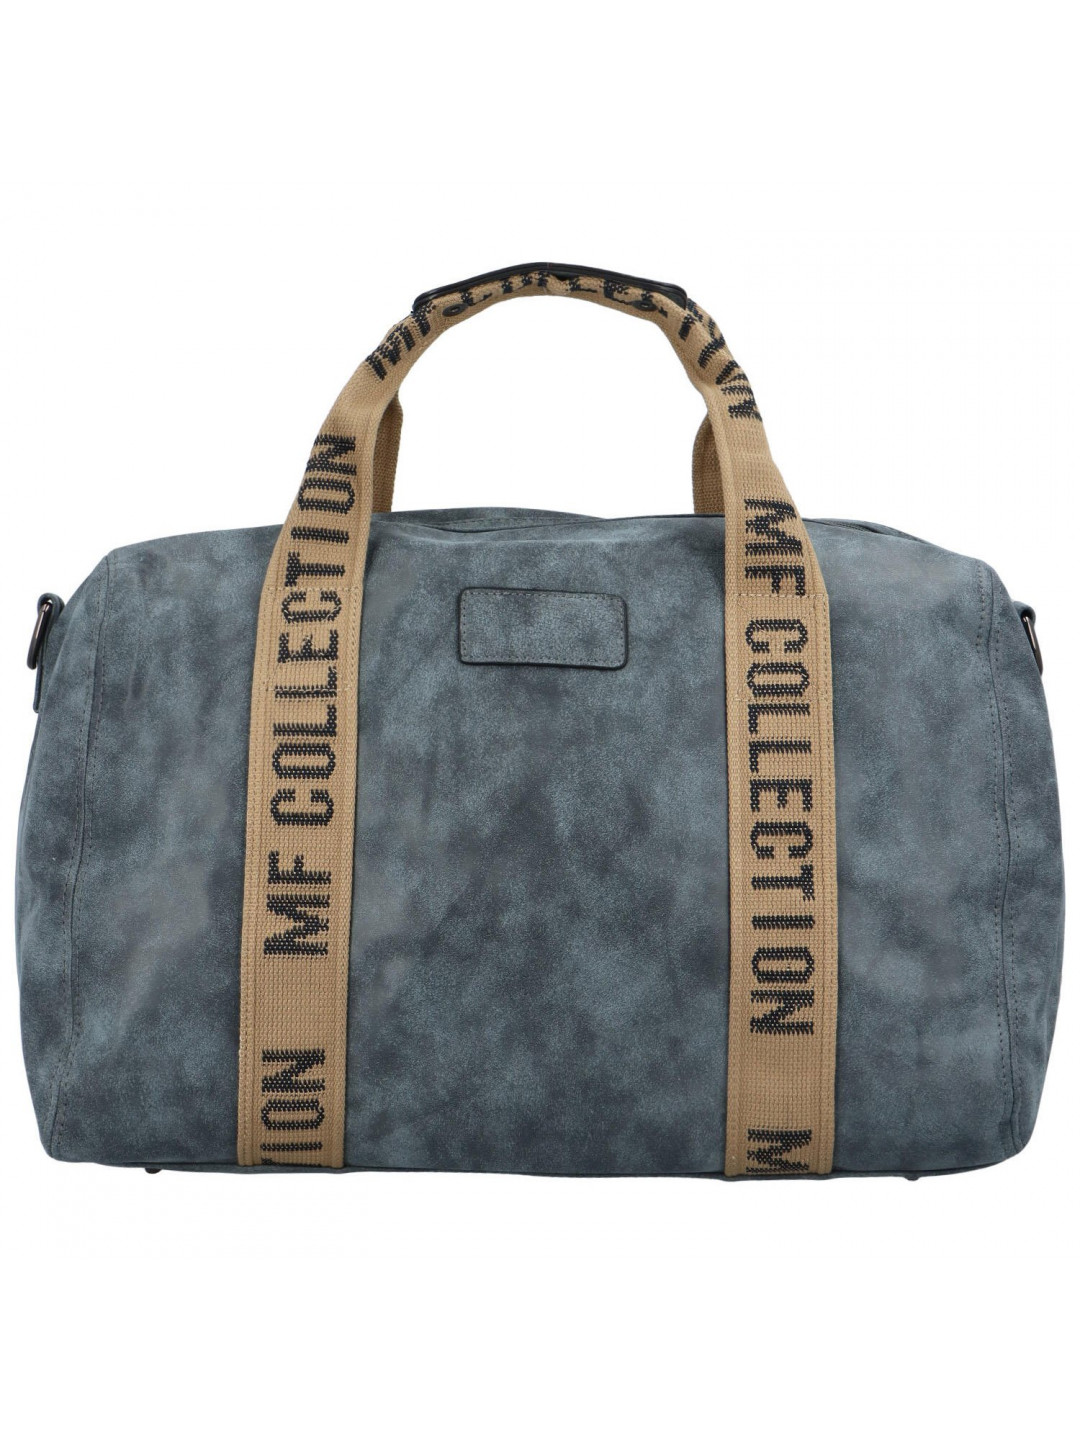 Cestovní dámská koženková kabelka Gita zimní kolekce modrá